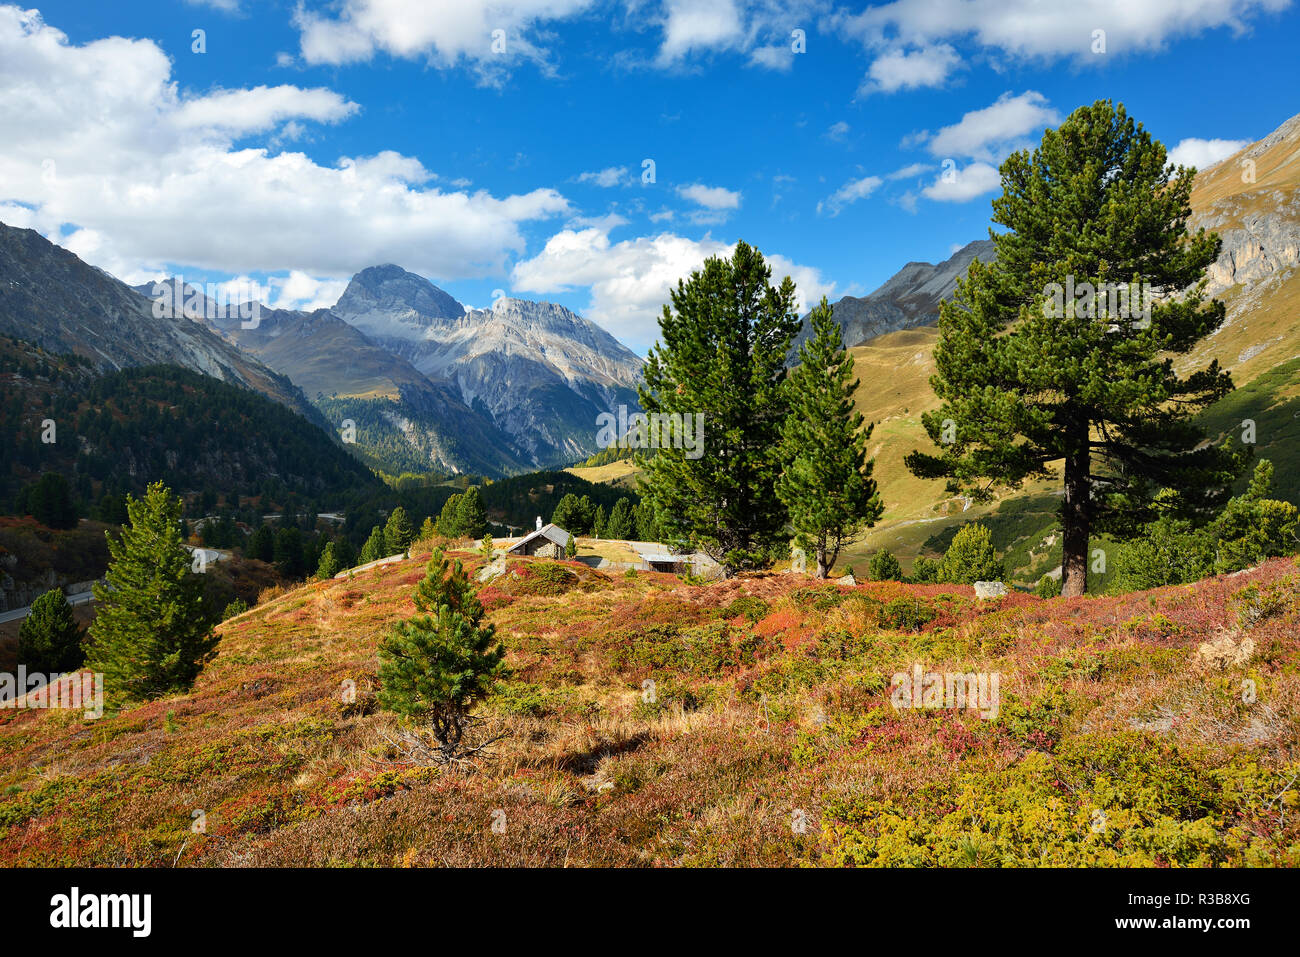 Paysage de montagne à l'Albulapass en automne, Albulatal, Val d'Alvra, Canton des Grisons, Suisse Banque D'Images